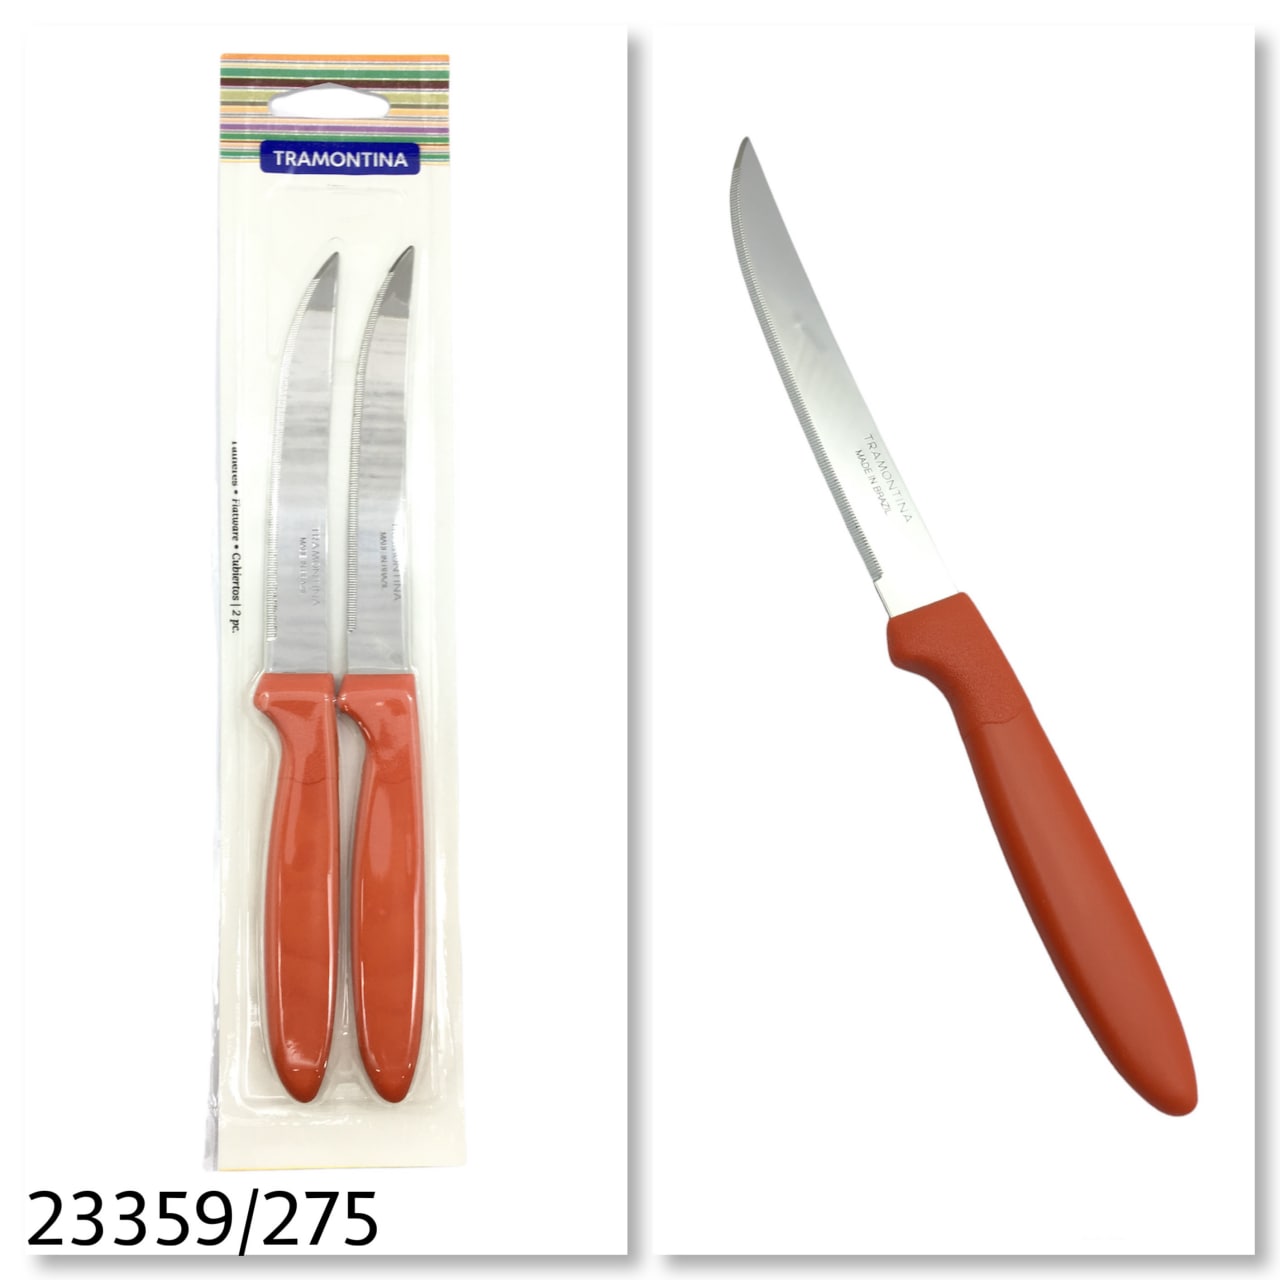 چاقو 2 عددی تیغه اره ای ترامونتینا برزیل 23359/245